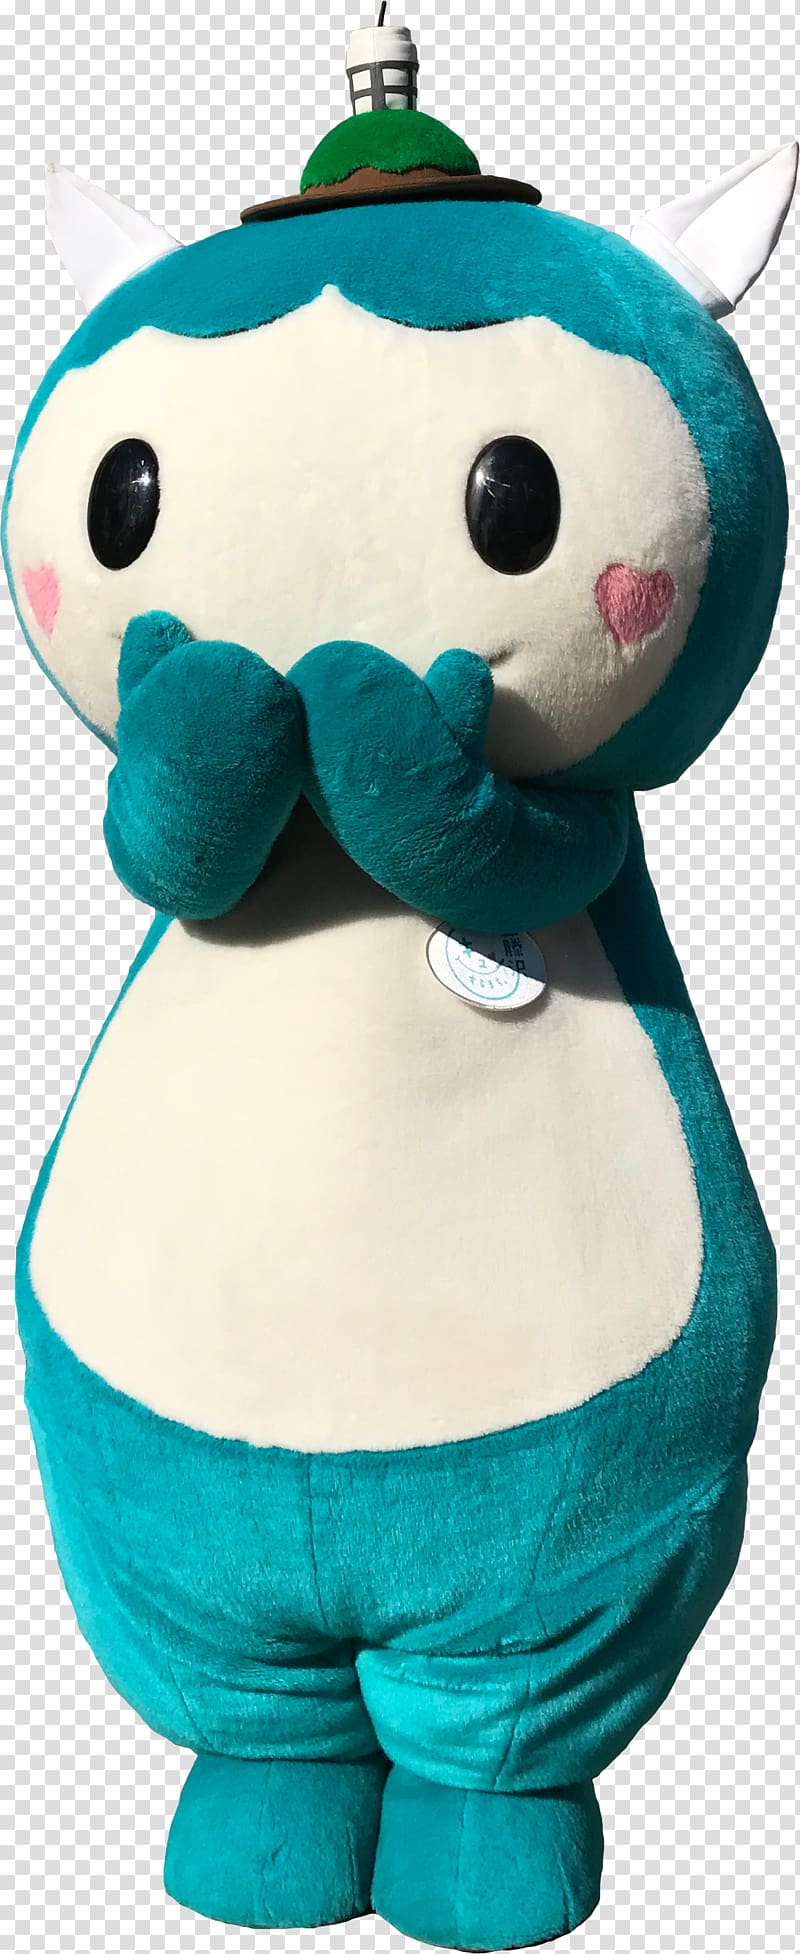 Plush Mascot Fujisawa Stuffed Animals & Cuddly Toys Teddy bear, kanagawa transparent background PNG clipart